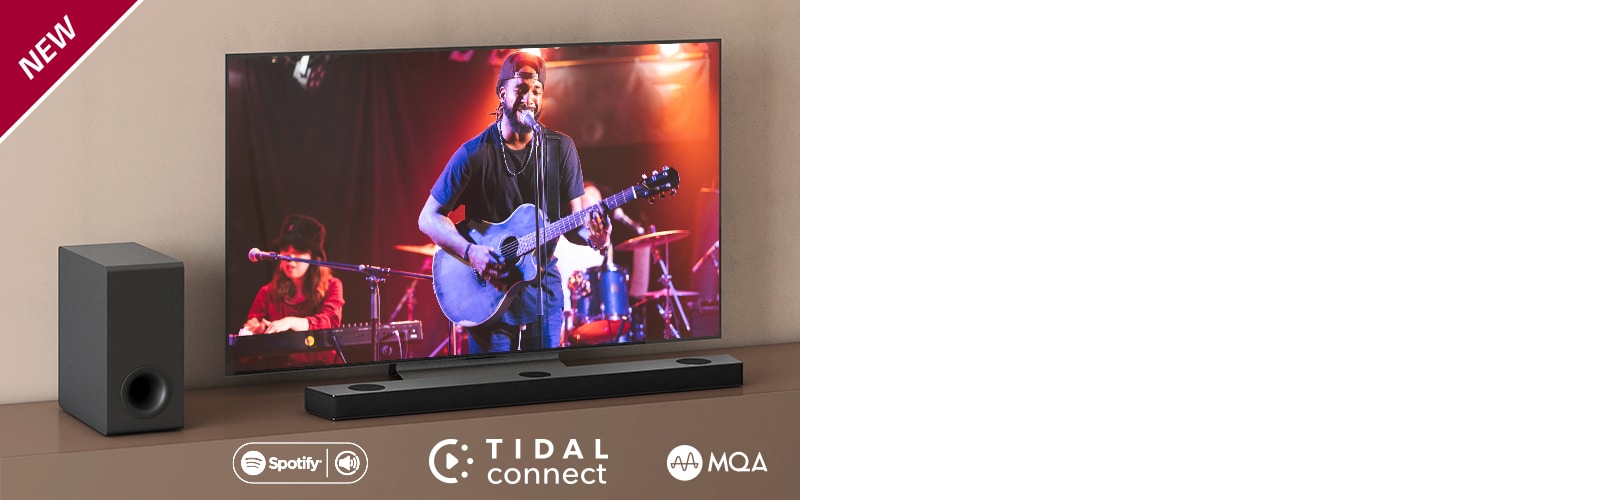 LG TV on asetettu ruskealle hyllylle, ja LG Sound Bar S75Q on asetettu TV:n eteen. Subwoofer on asetettu TV:n vasemmalle puolelle. Televisiossa näkyy konserttinäkymä. UUSI-merkki näkyy vasemmassa yläkulmassa.